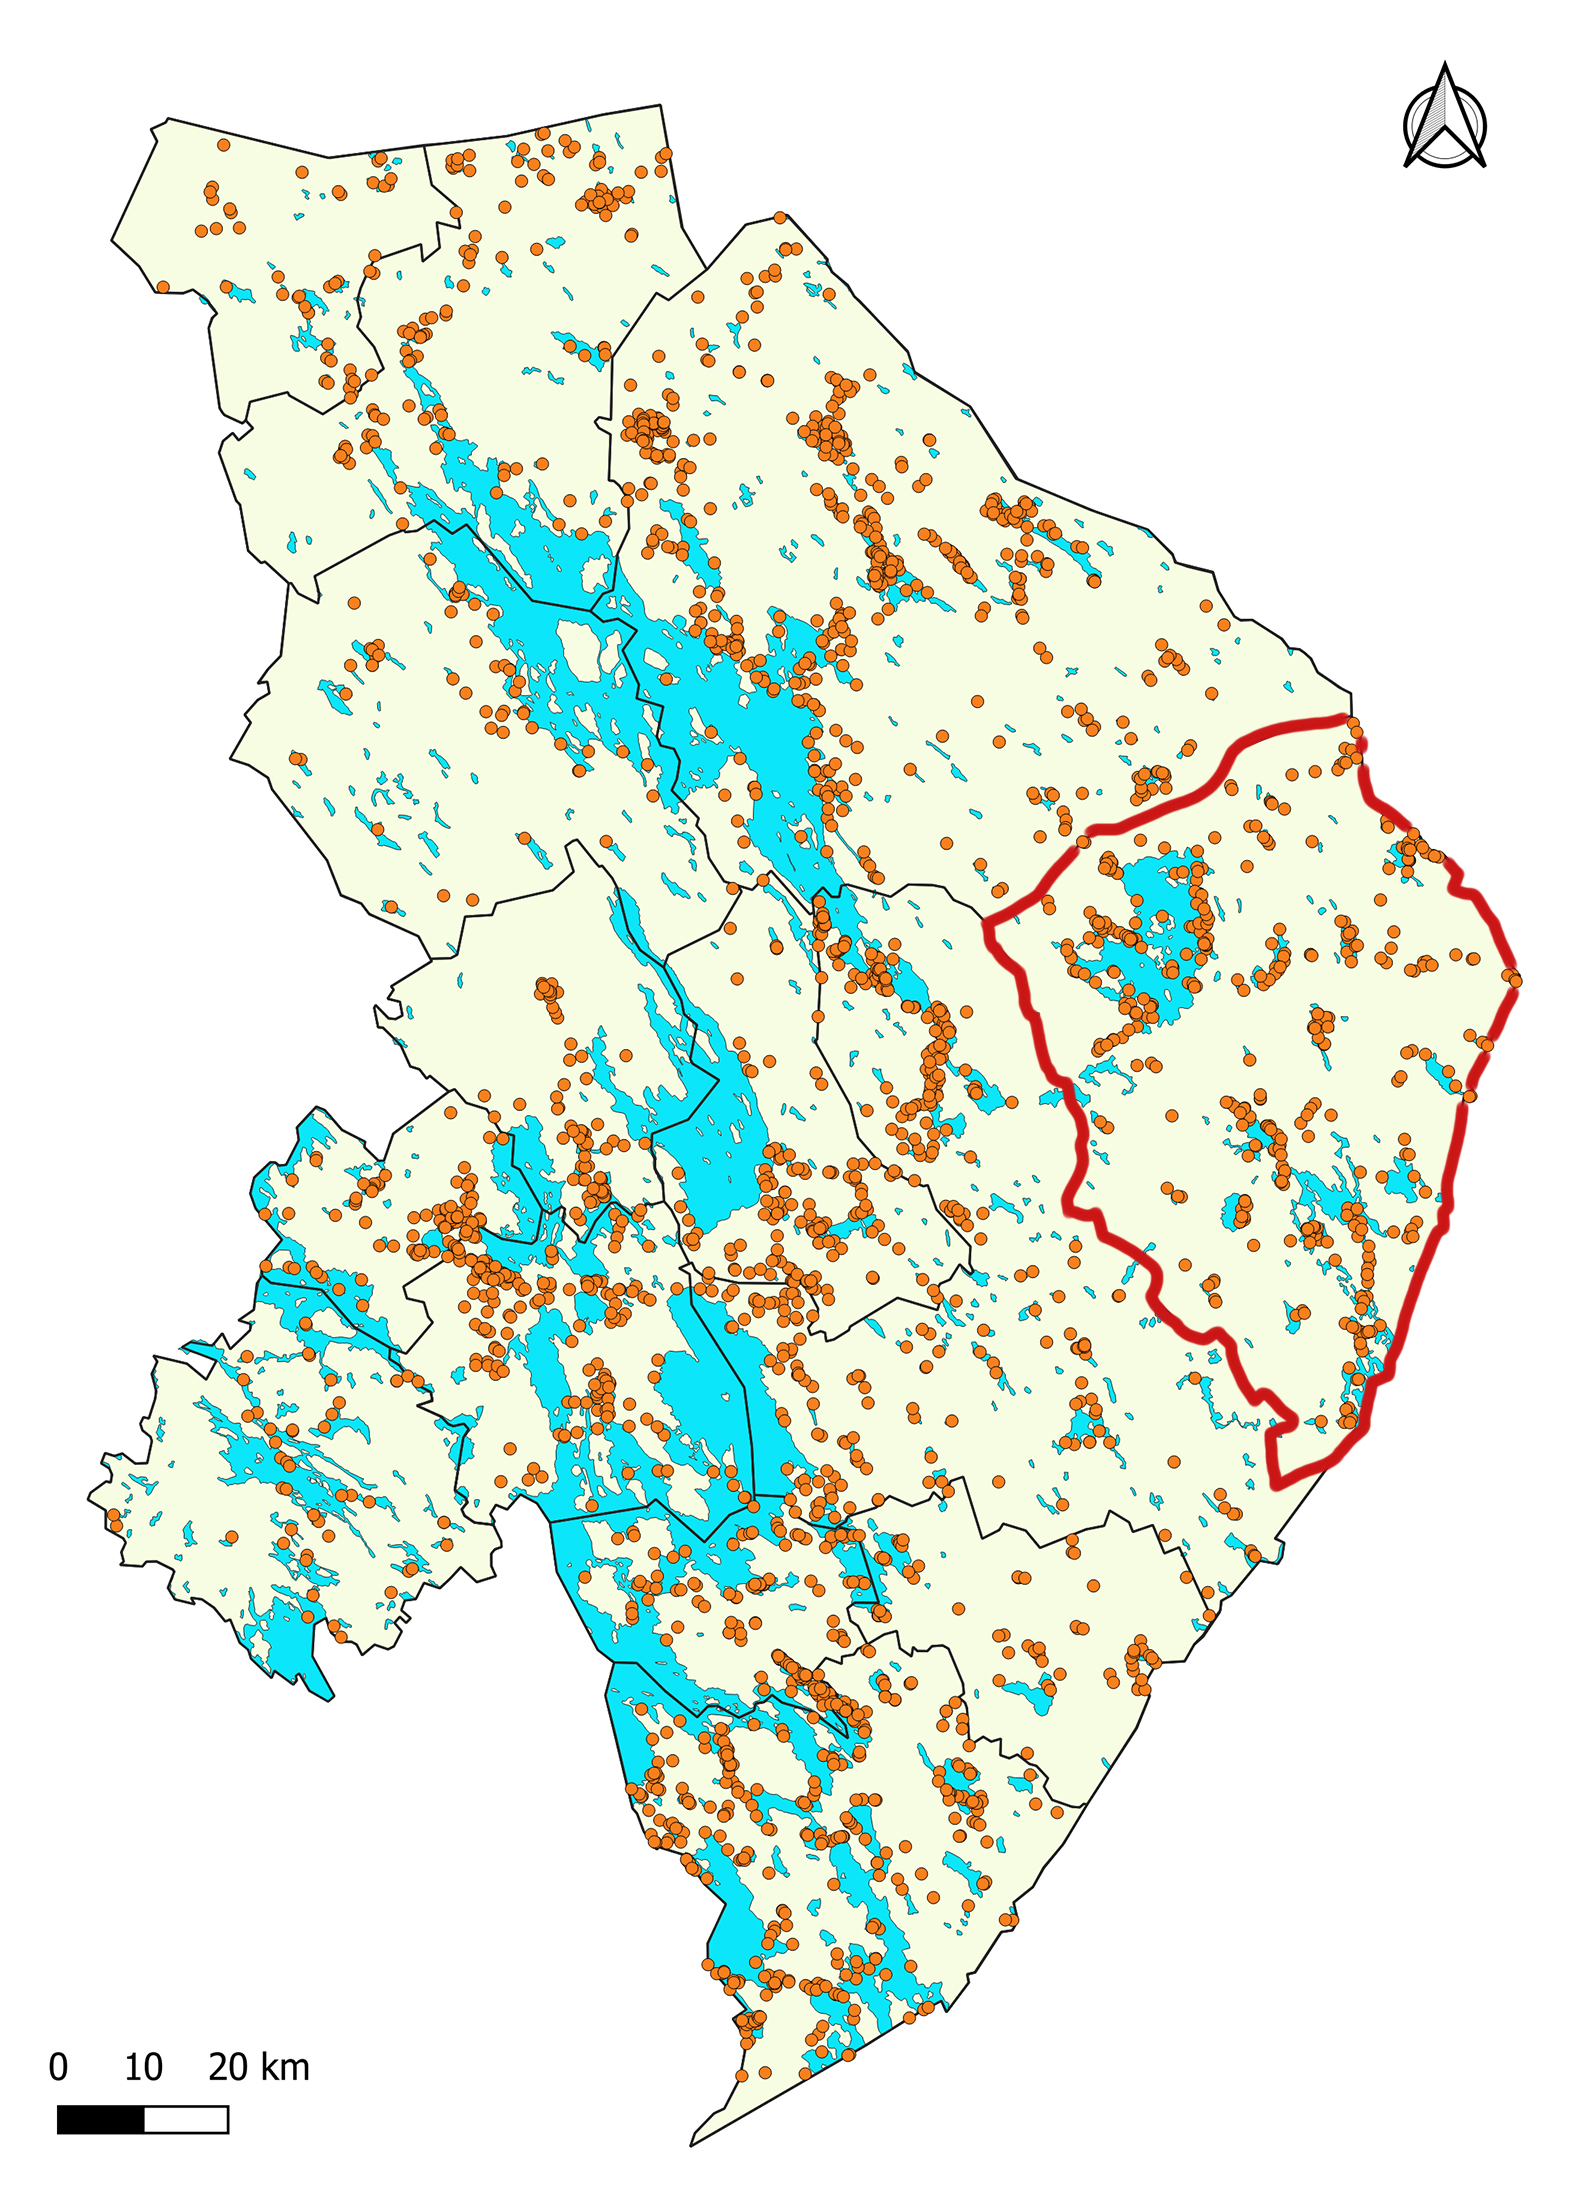 Ilomantsin alueen kiinteät muinaisjäännökset. Kartassa Ilomantsin kunnan rajat on piirretty punaisella, muut kunnat näkyvät mustin rajoin. Oranssit pallot kertovat löydöspaikoista. Vesistöt on merkitty sinisellä.